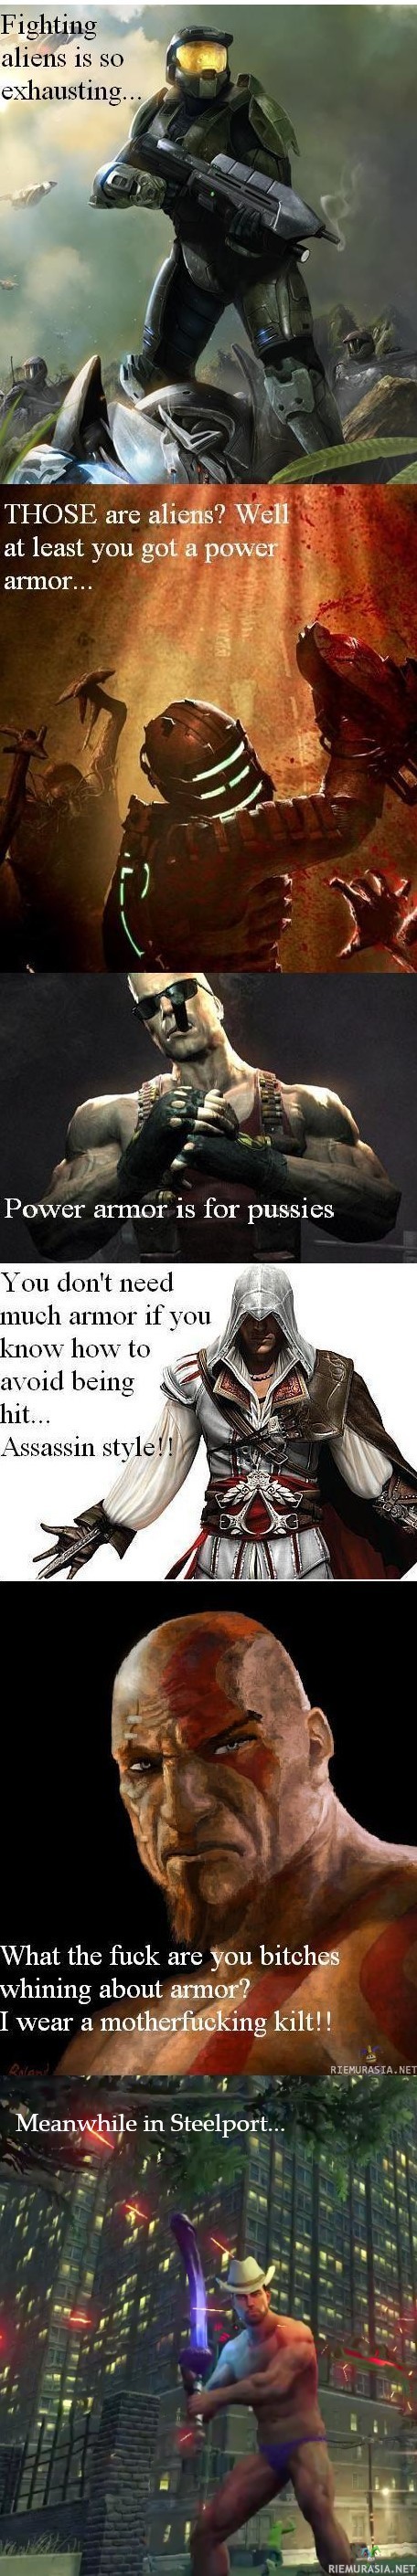 Armor makes a man